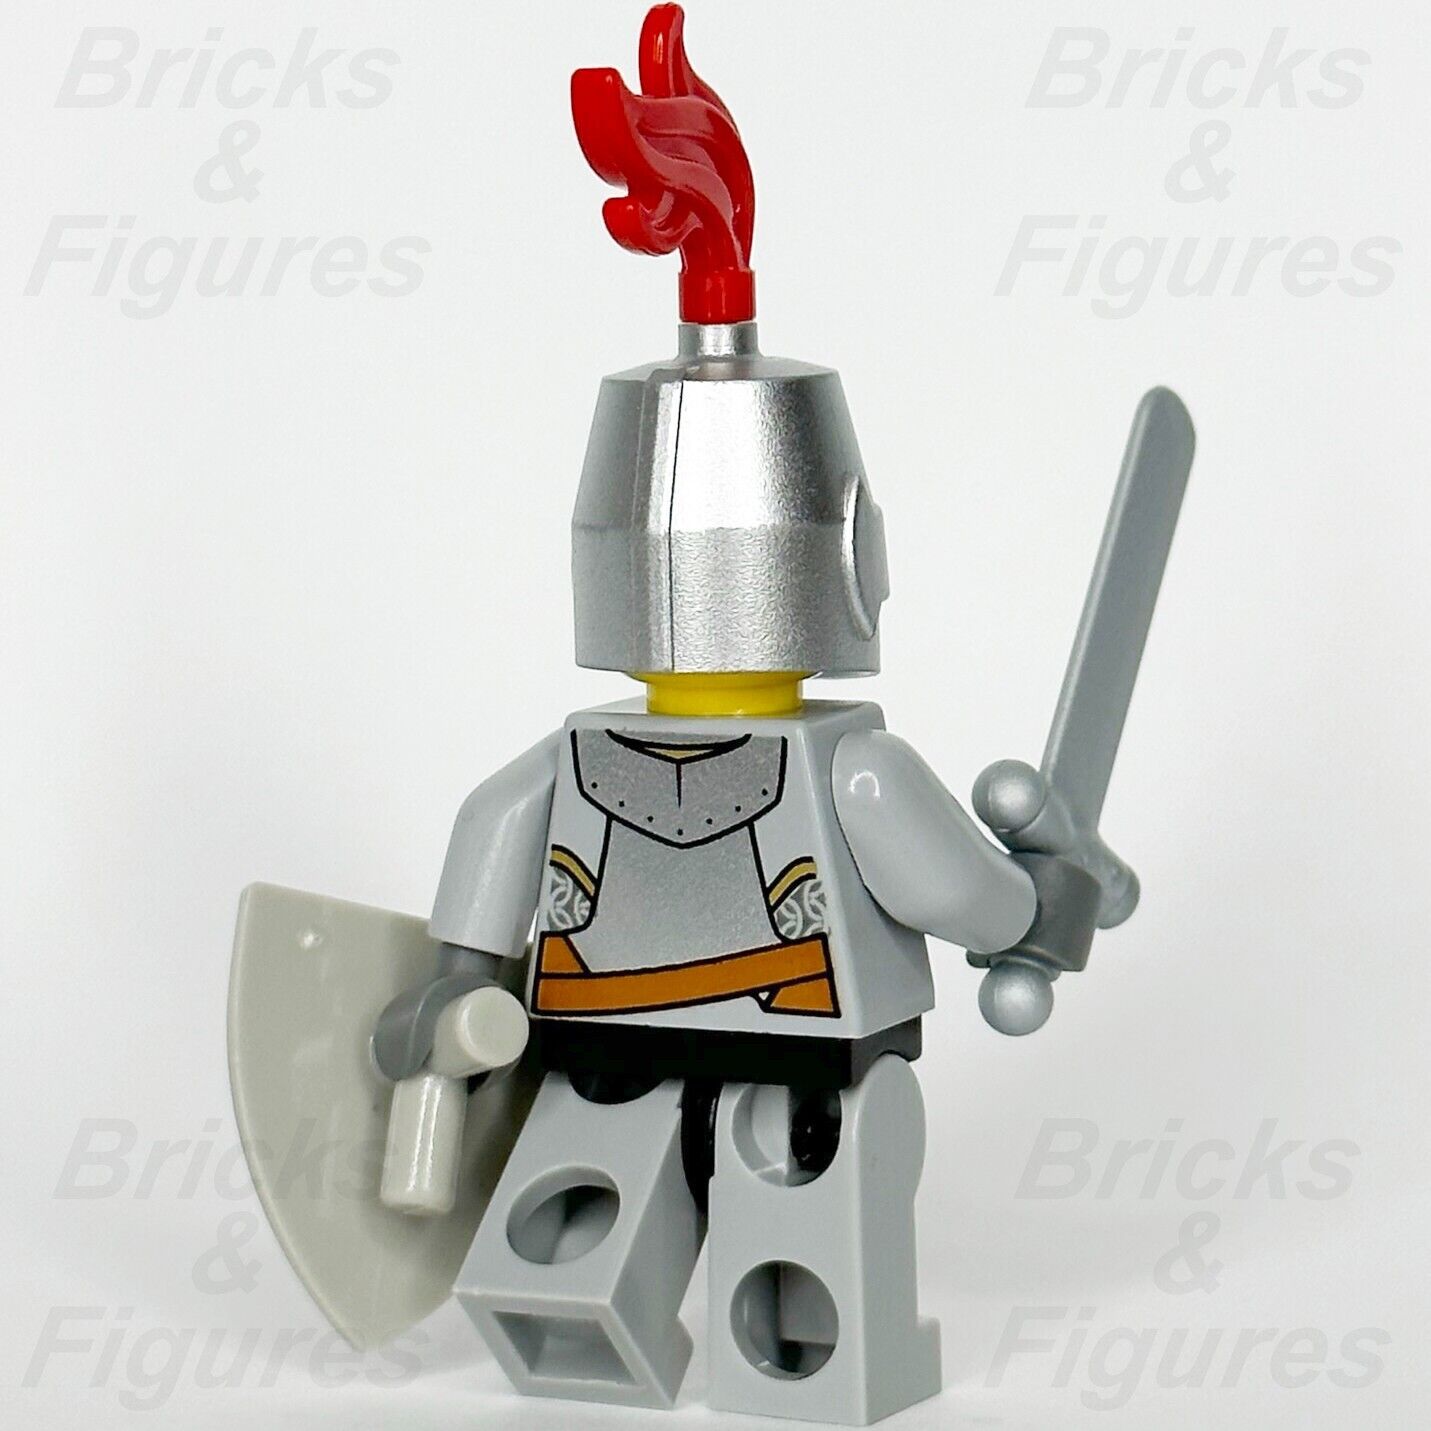 レゴ キャッスル ライオン ナイト ミニフィギュア キングダムズ 剣と盾